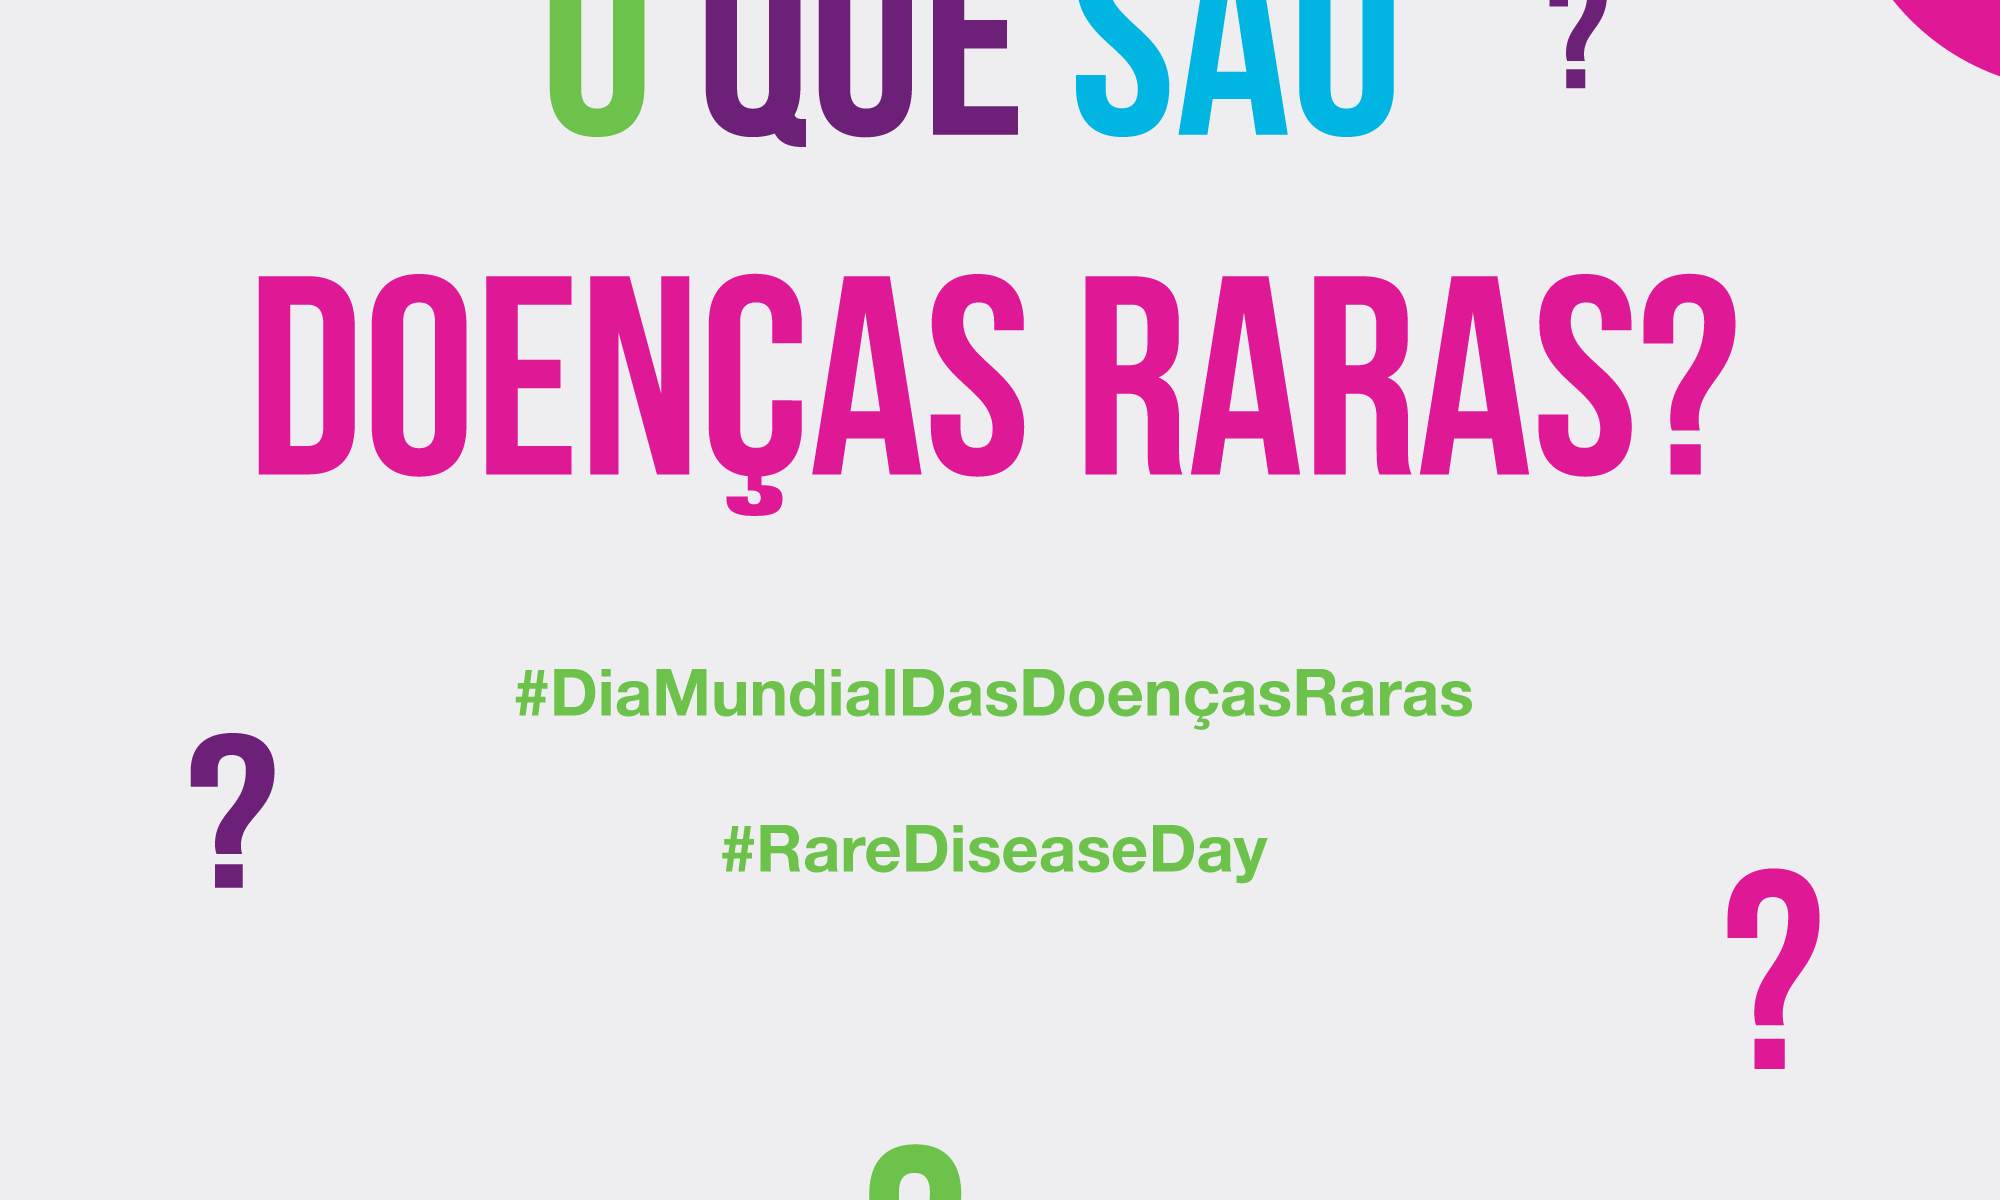 #PraCegoVer imagem de fundo claro e sinais de interrogação espalhados. Está escrito: "O que são doenças raras?" Há as logos do RareDiseaseDay e da Retina Brasil